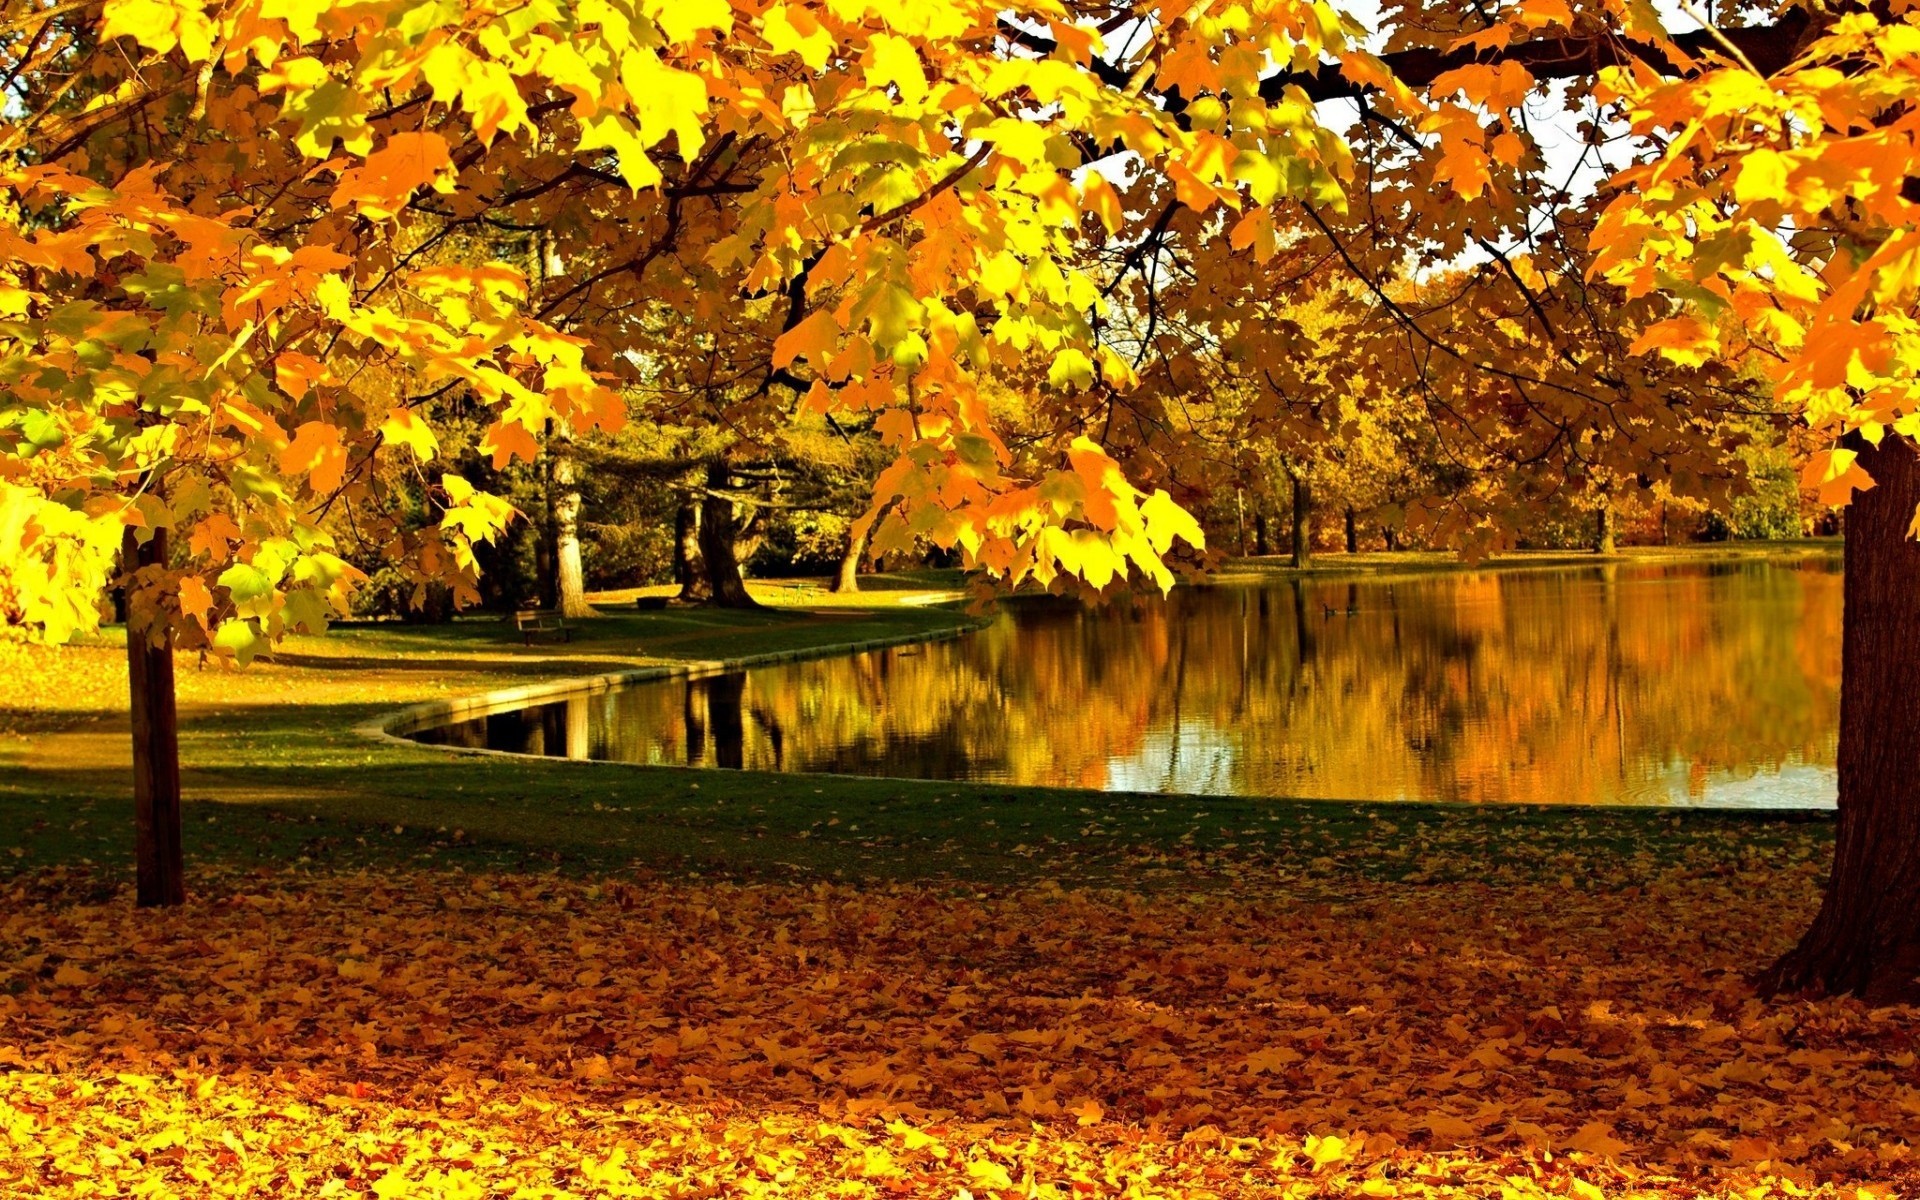 осень осень лист кленовый дерево сезон парк природа древесины золото пейзаж живописный на открытом воздухе цвет пейзажи руководство пышные филиал изменение яркий